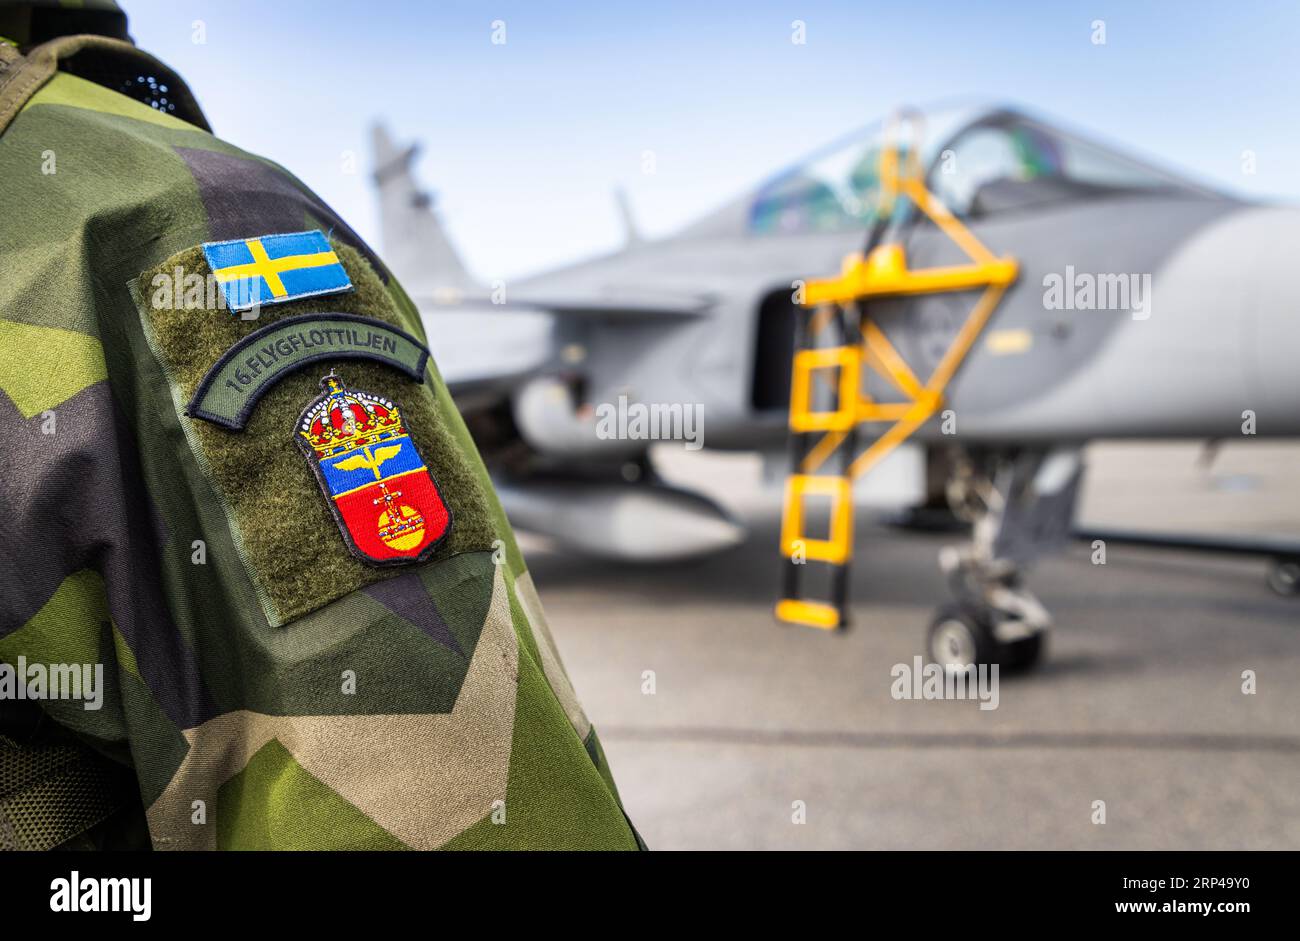 Jas 39 Gripen C, spettacolo aereo, aeroporto di Örebro, Örebro, Svezia. Personale dell'ala Uppland (svedese: Upplands flygflottilj), anche F 16 Uppsala, F 16. Foto Stock